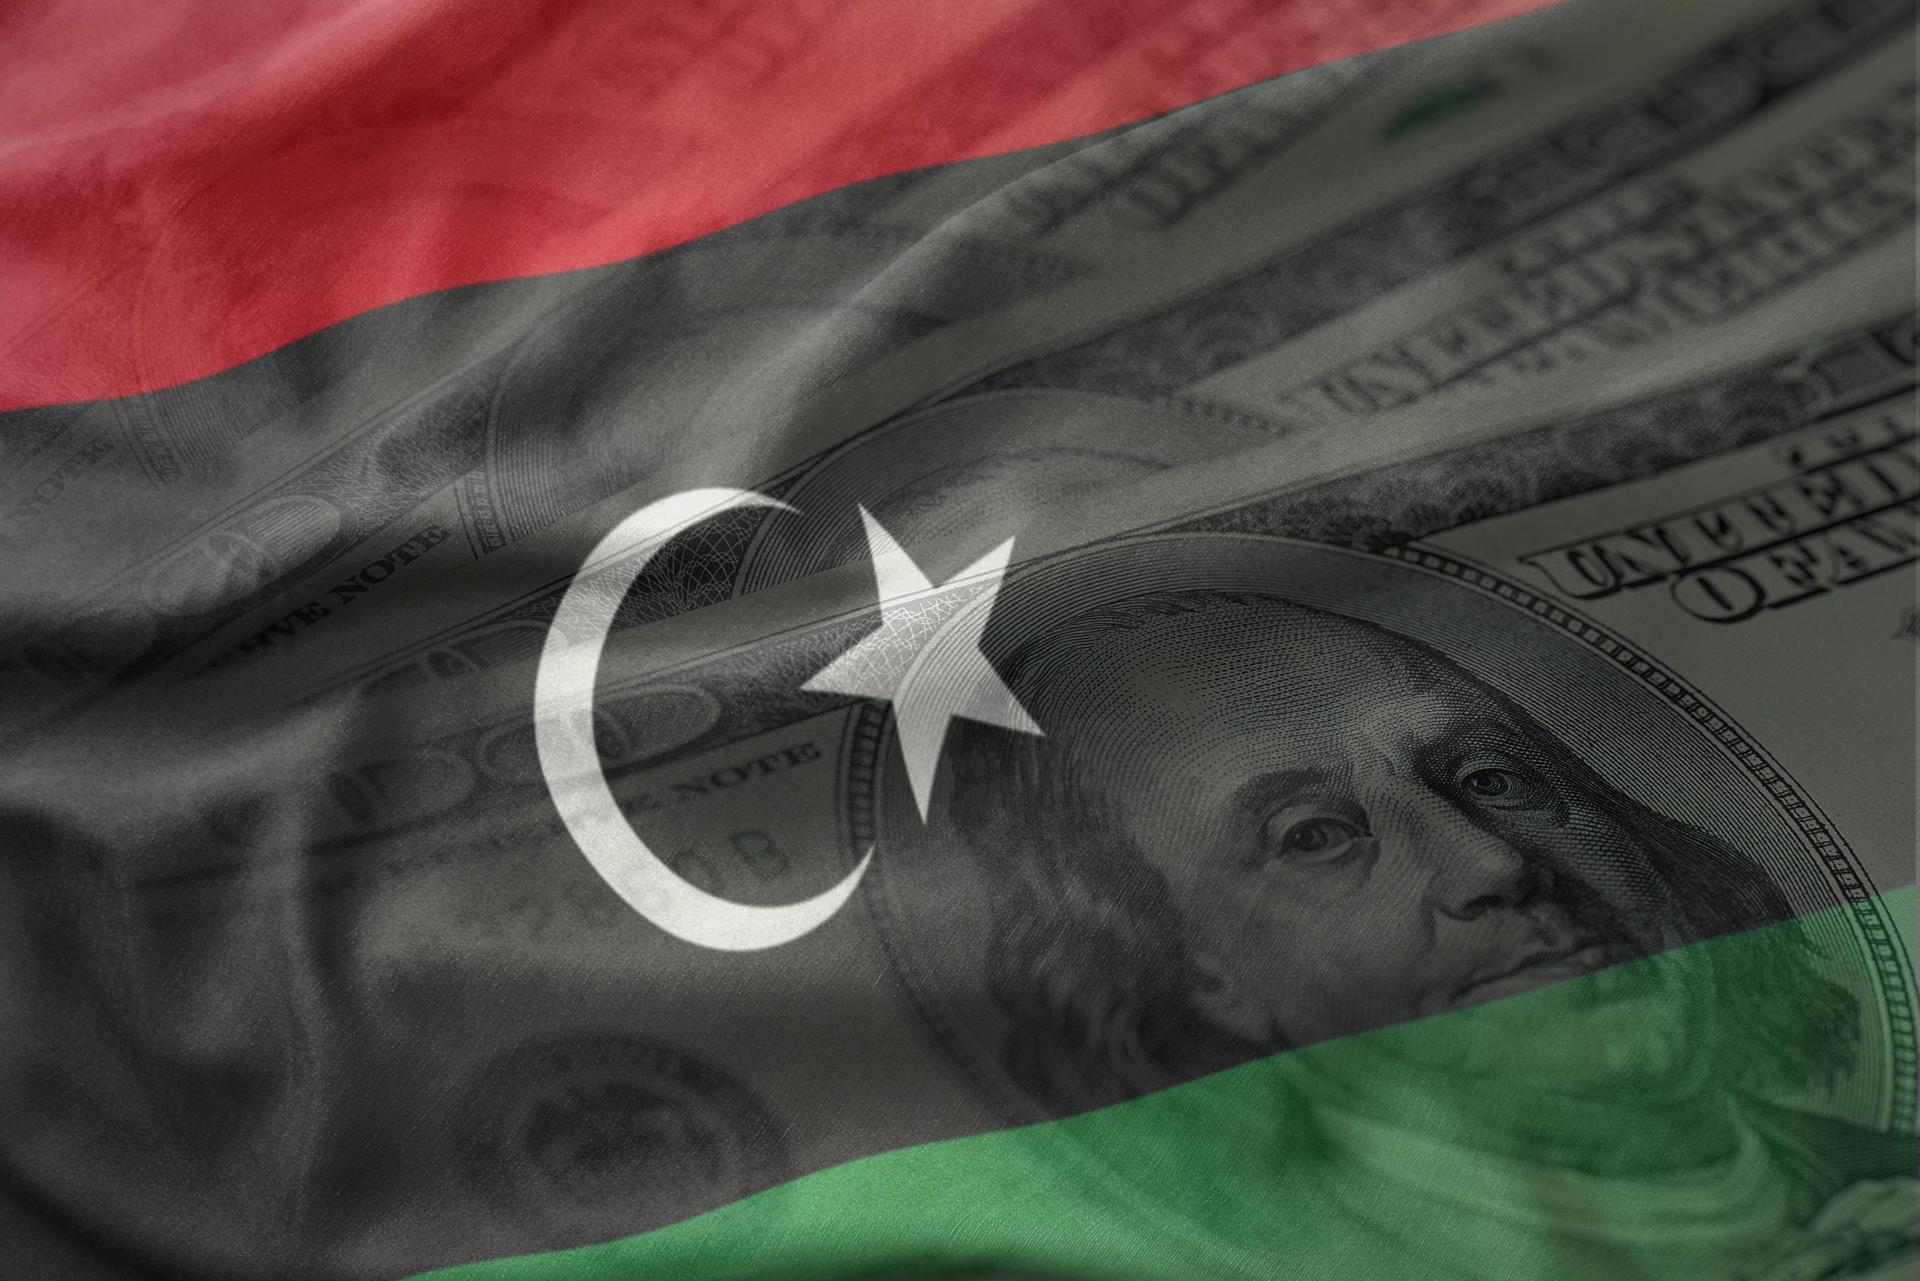 ليبيا والميزانيات القياسية.. أبواب مُشرعة للإنفاق الحكومي دون رقيب